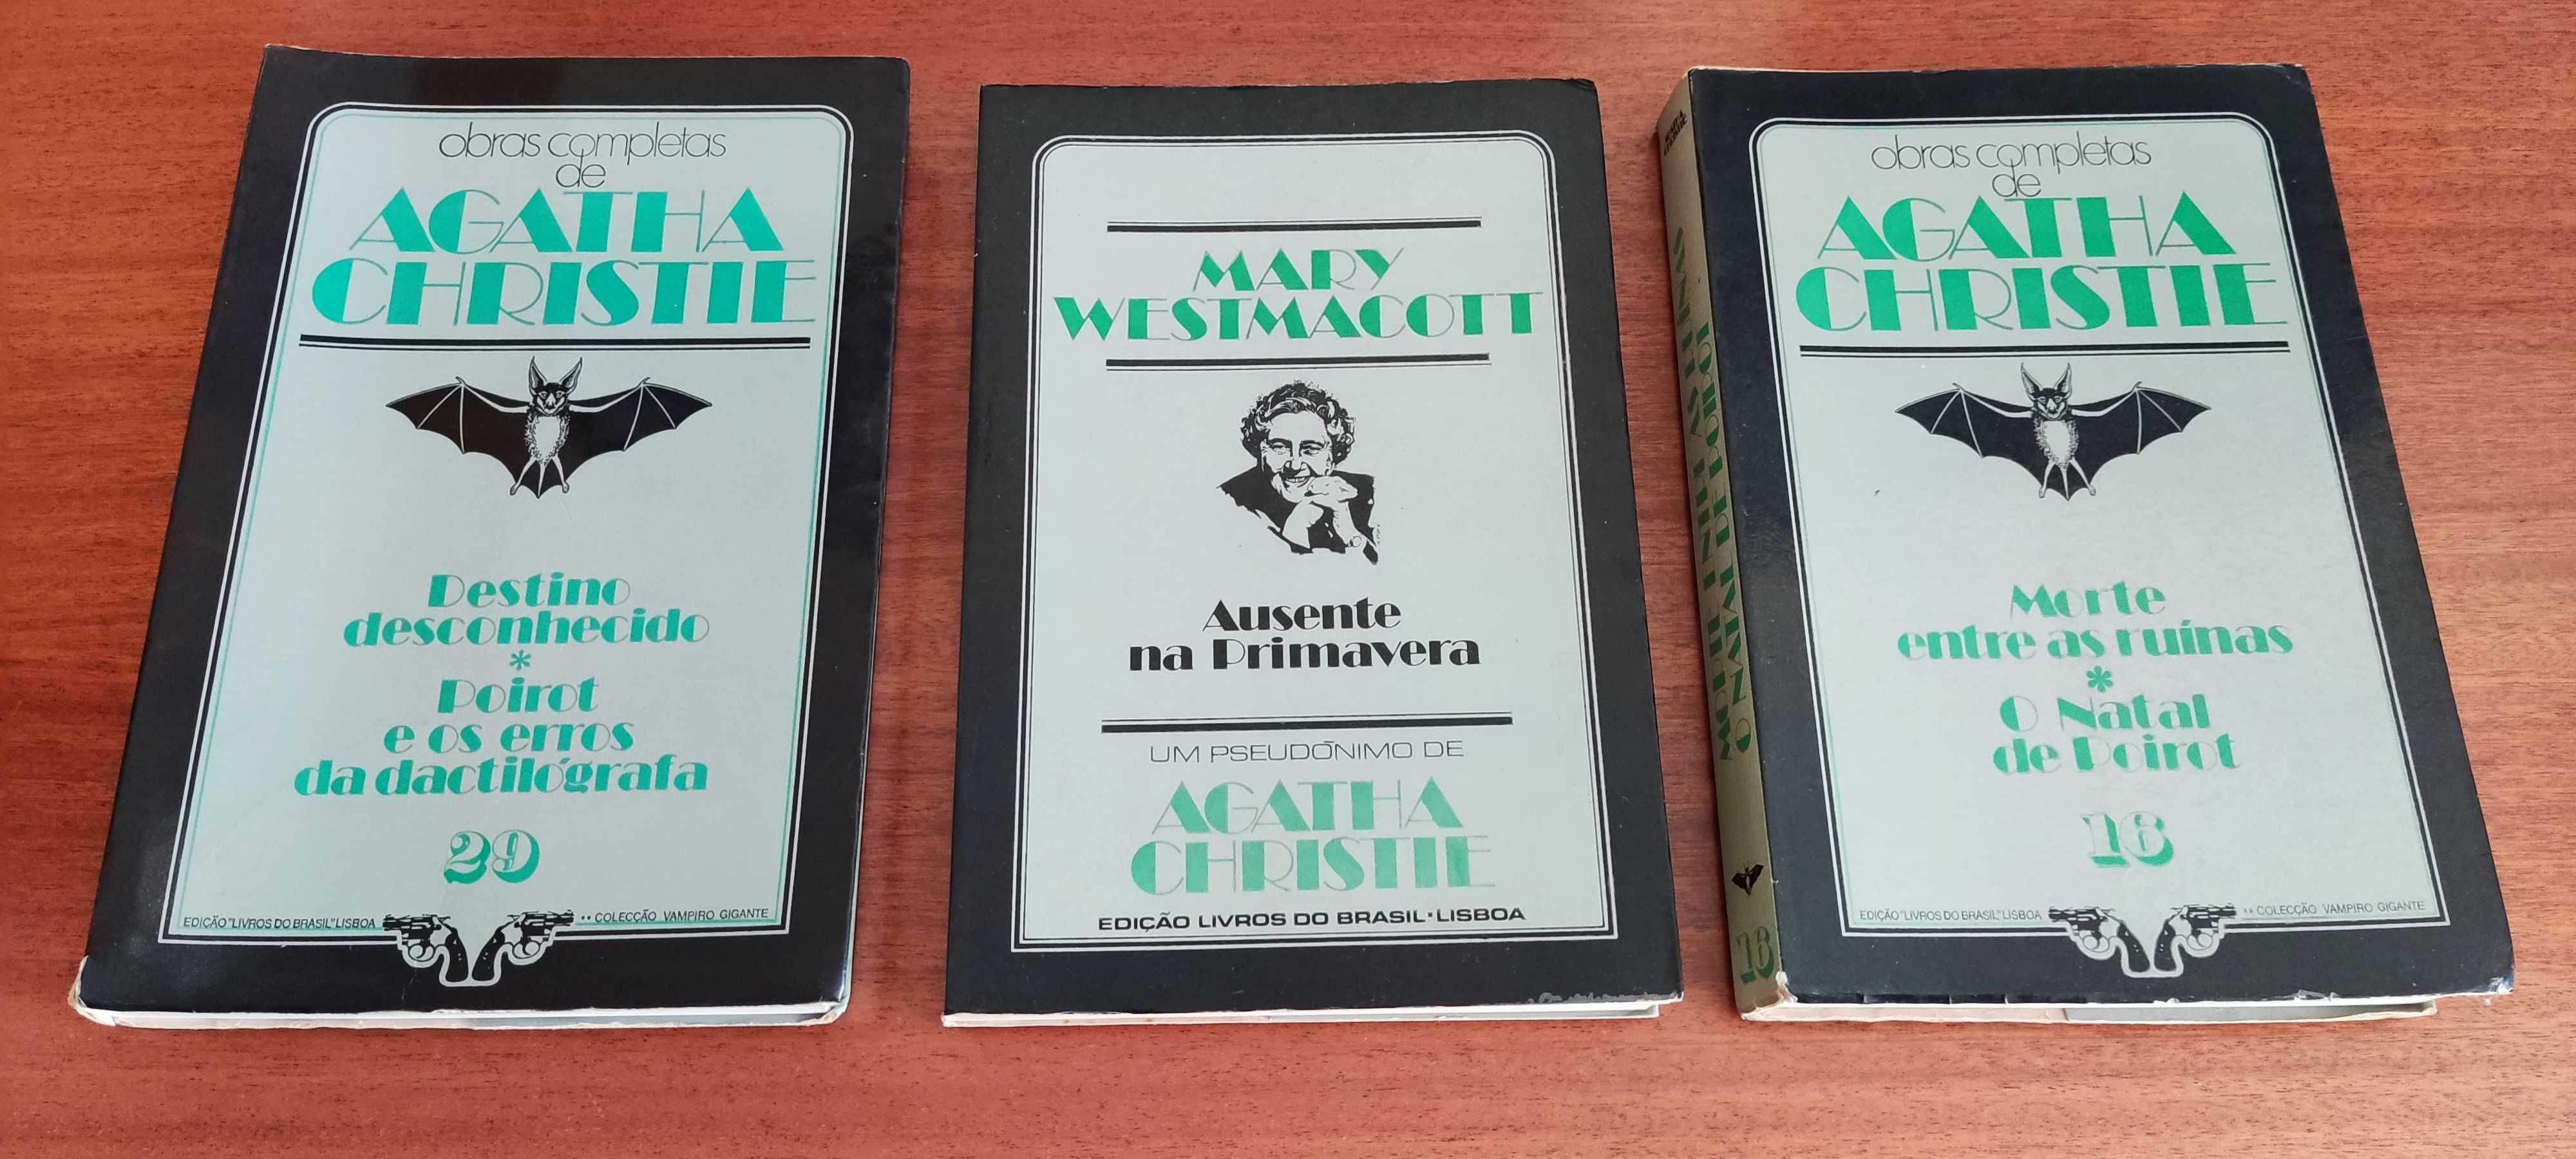 Livros Agatha Christie, Clube do Crime e outros